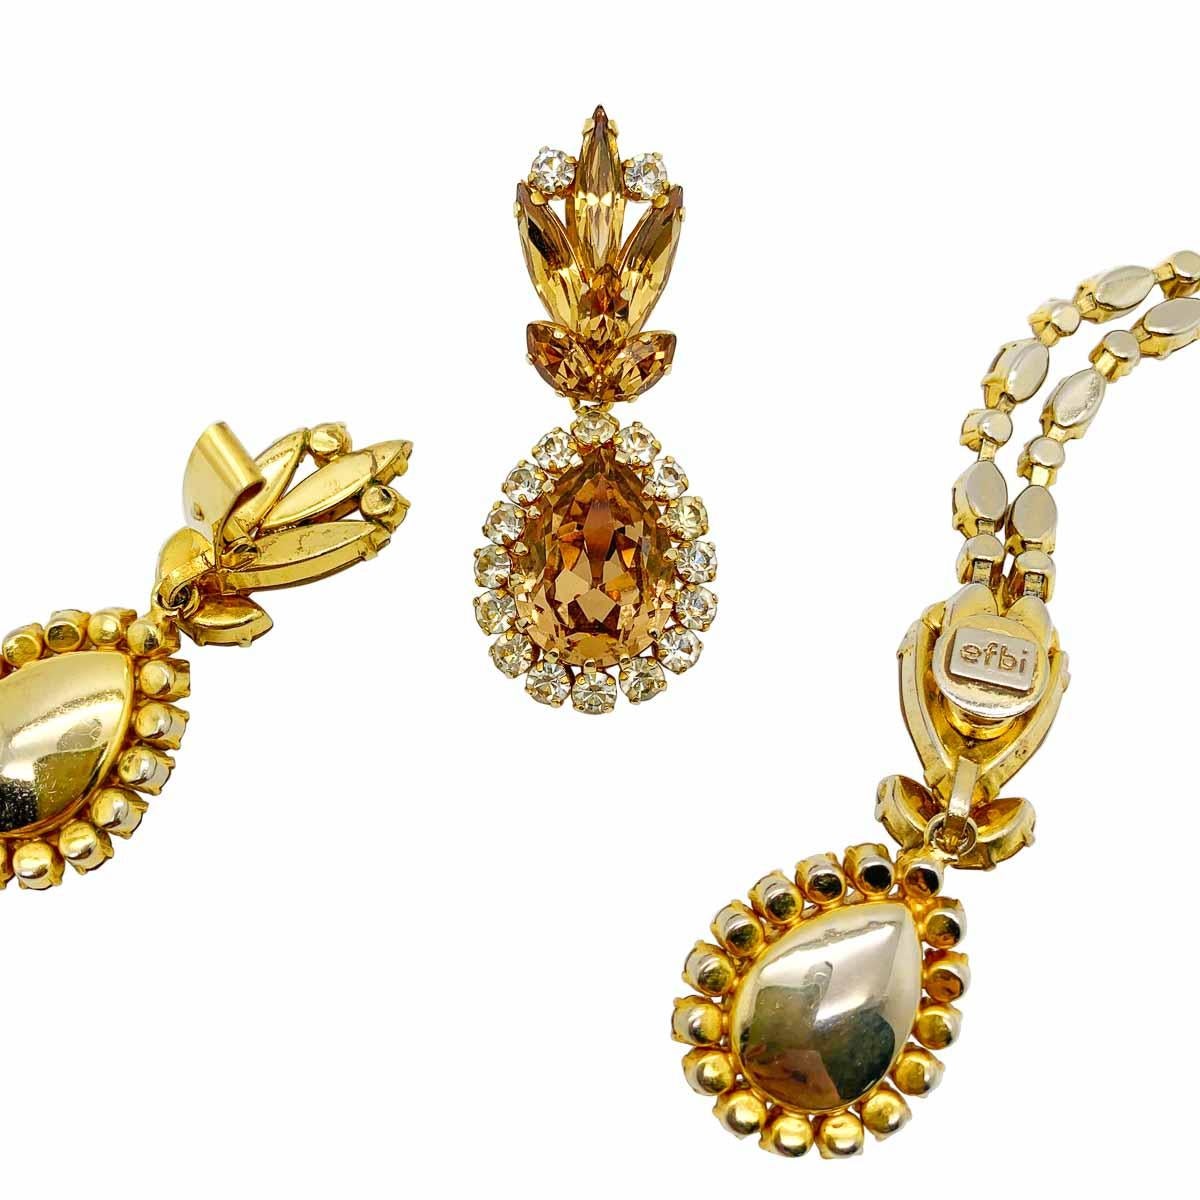 Georgian Vintage EFBI Austria Citrine Crystal Necklace & Earrings 1960s